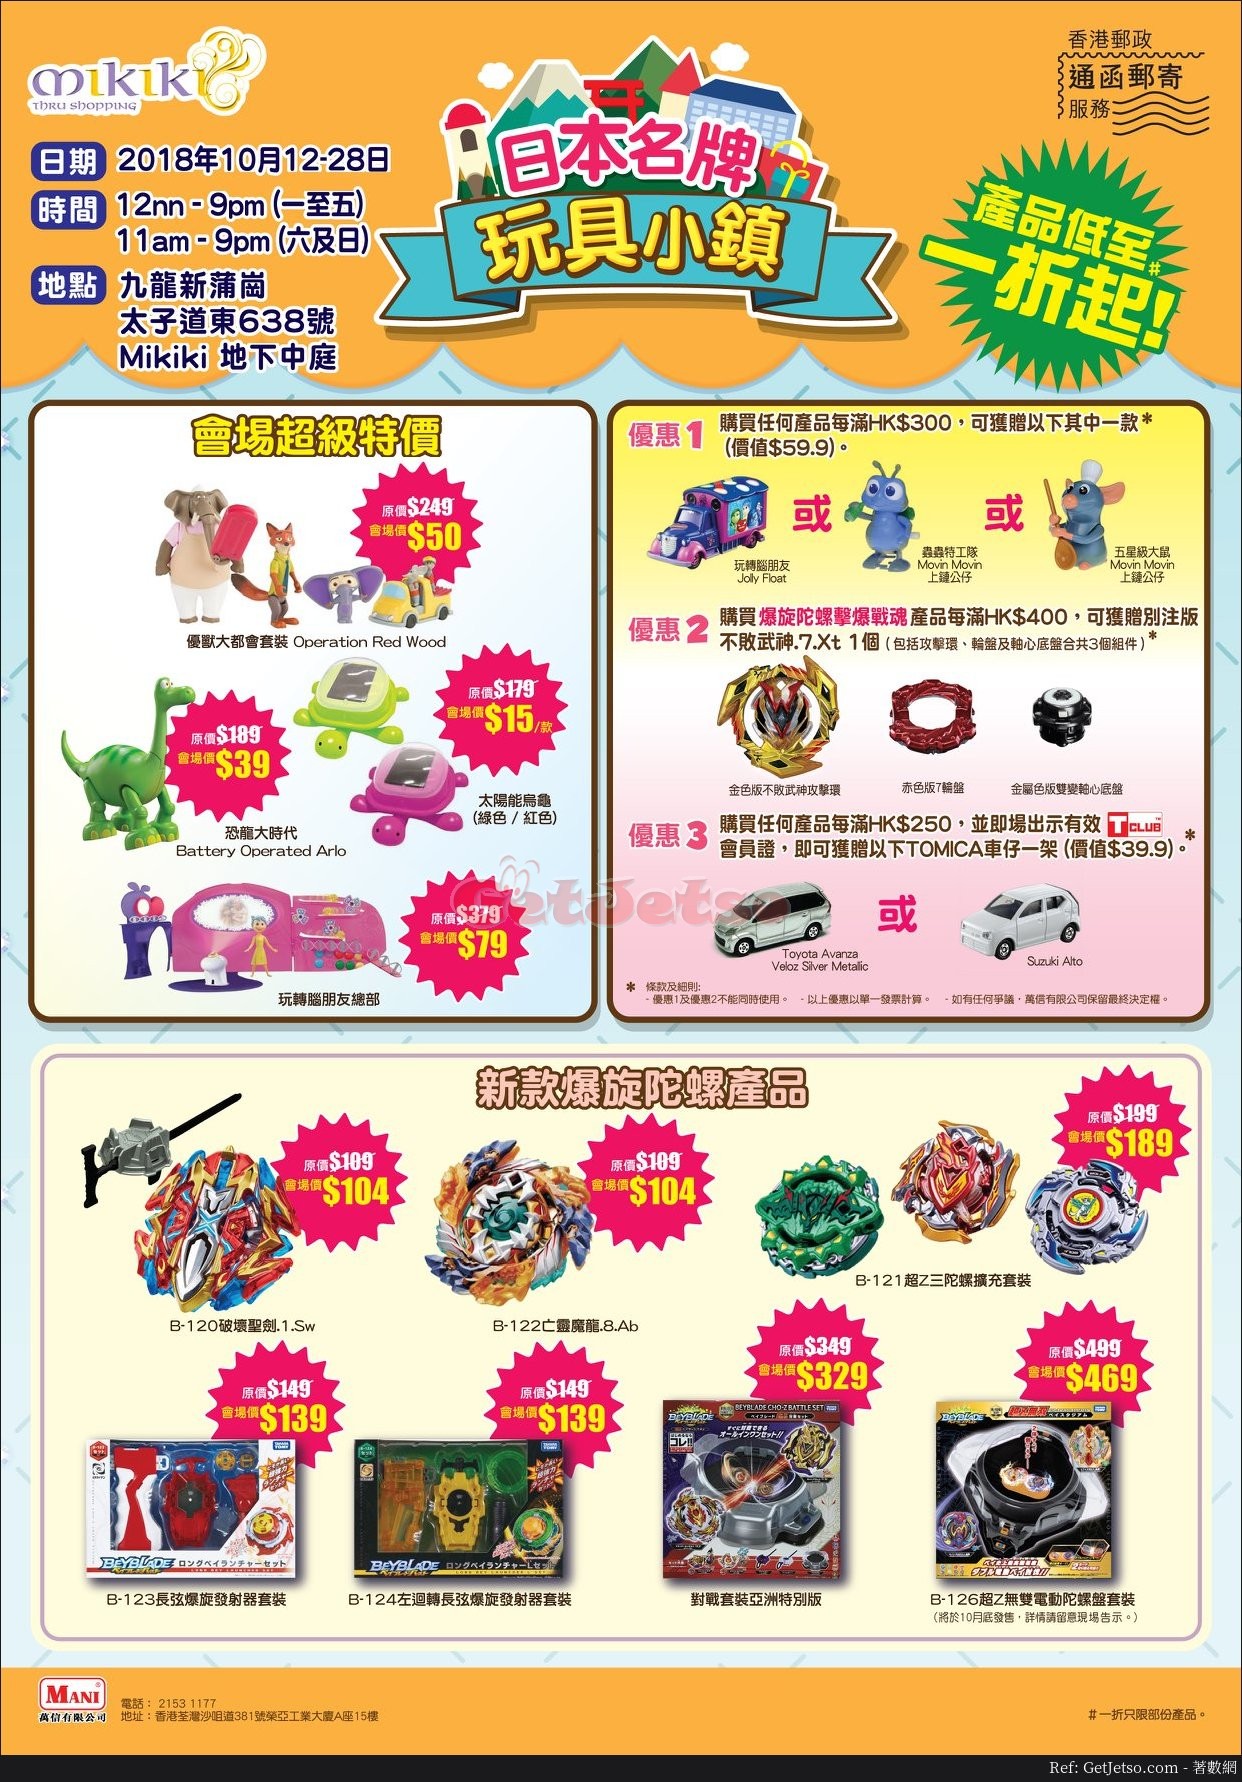 Mikiki 日本名牌玩具小鎮低至1折開倉優惠(至18年10月28日)圖片1